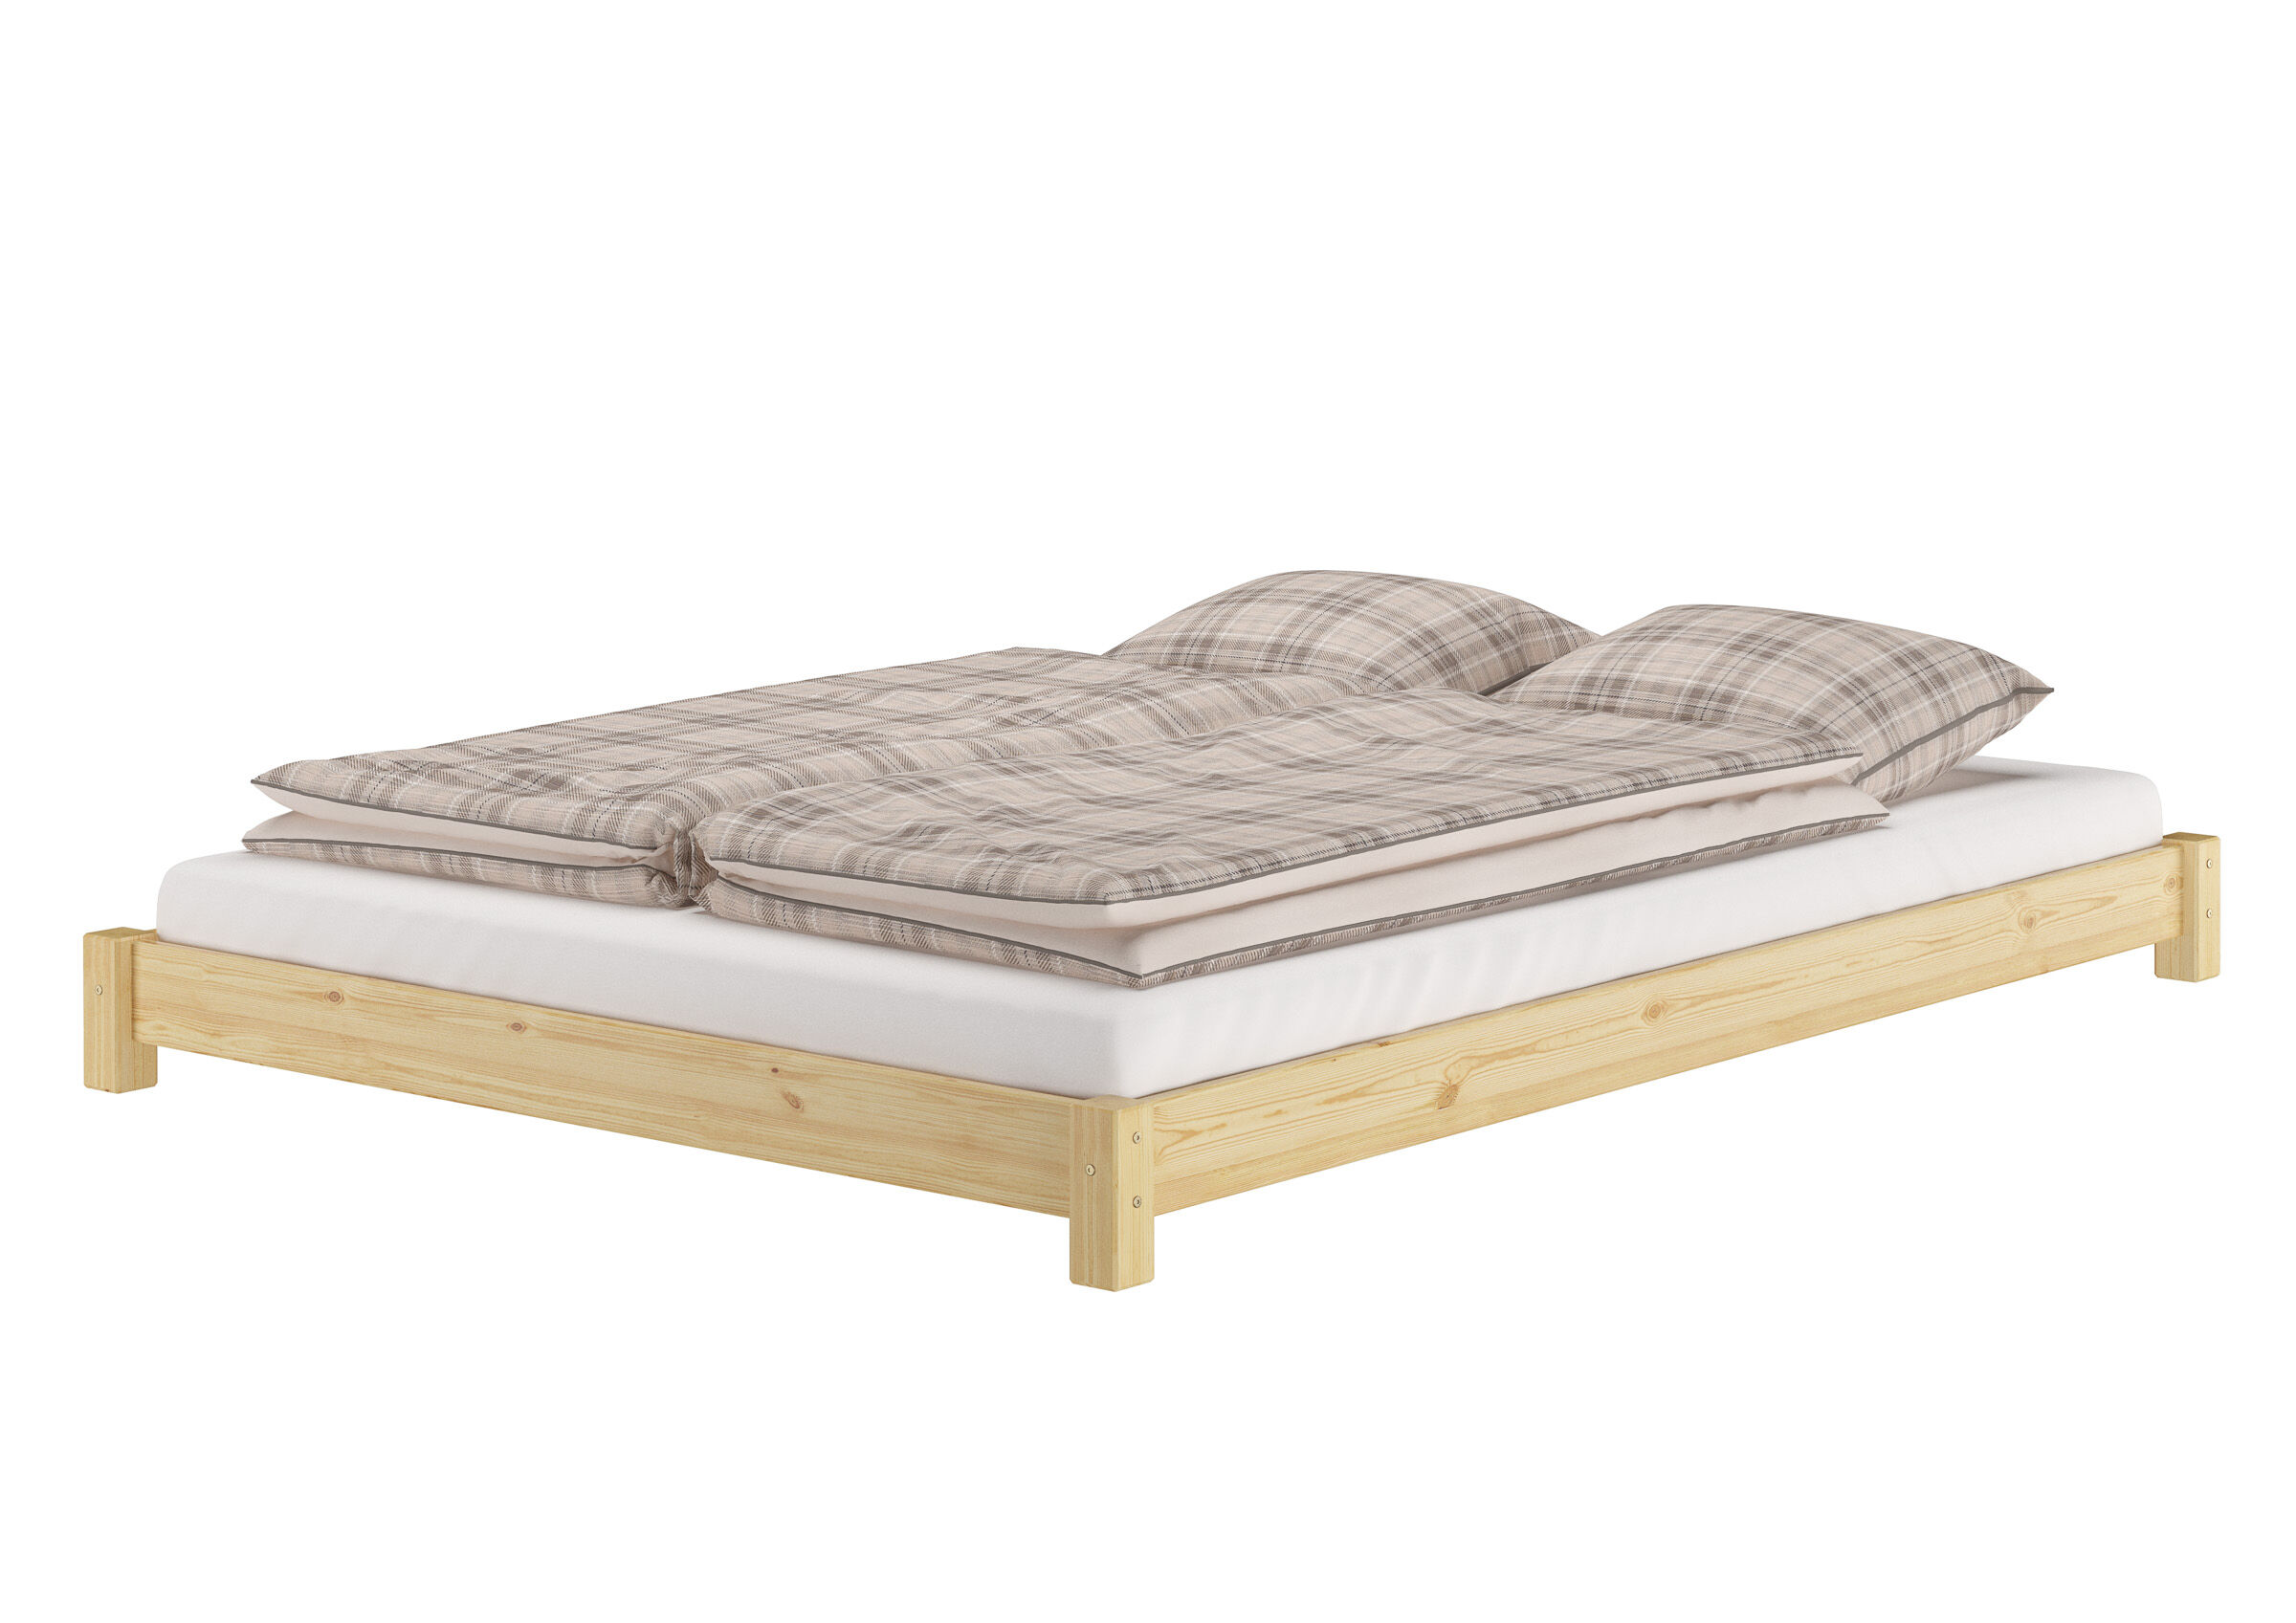 Tre varianti di letto matrimoniale futon molto basso 140x200 in pino massello V-60.51-14